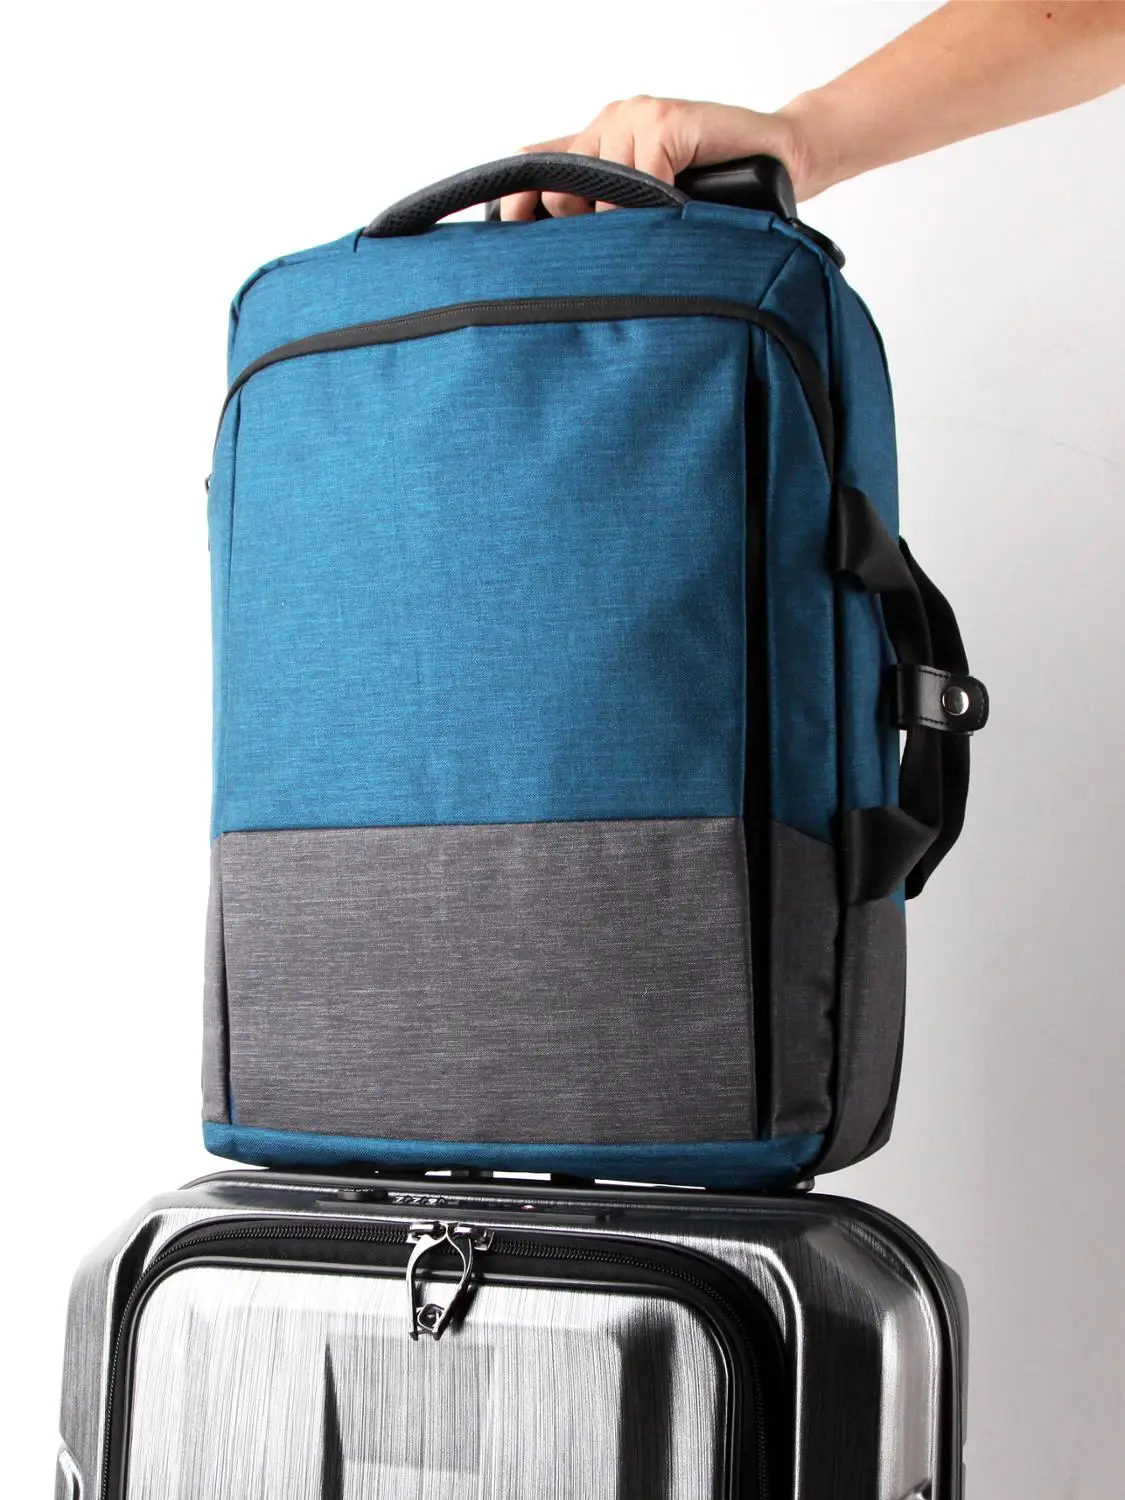 Повседневный деловой мужской рюкзак для компьютера, легкая сумка для ноутбука 19 л, Женский дорожный рюкзак с защитой от кражи 2020, темно-серы... от AliExpress RU&CIS NEW